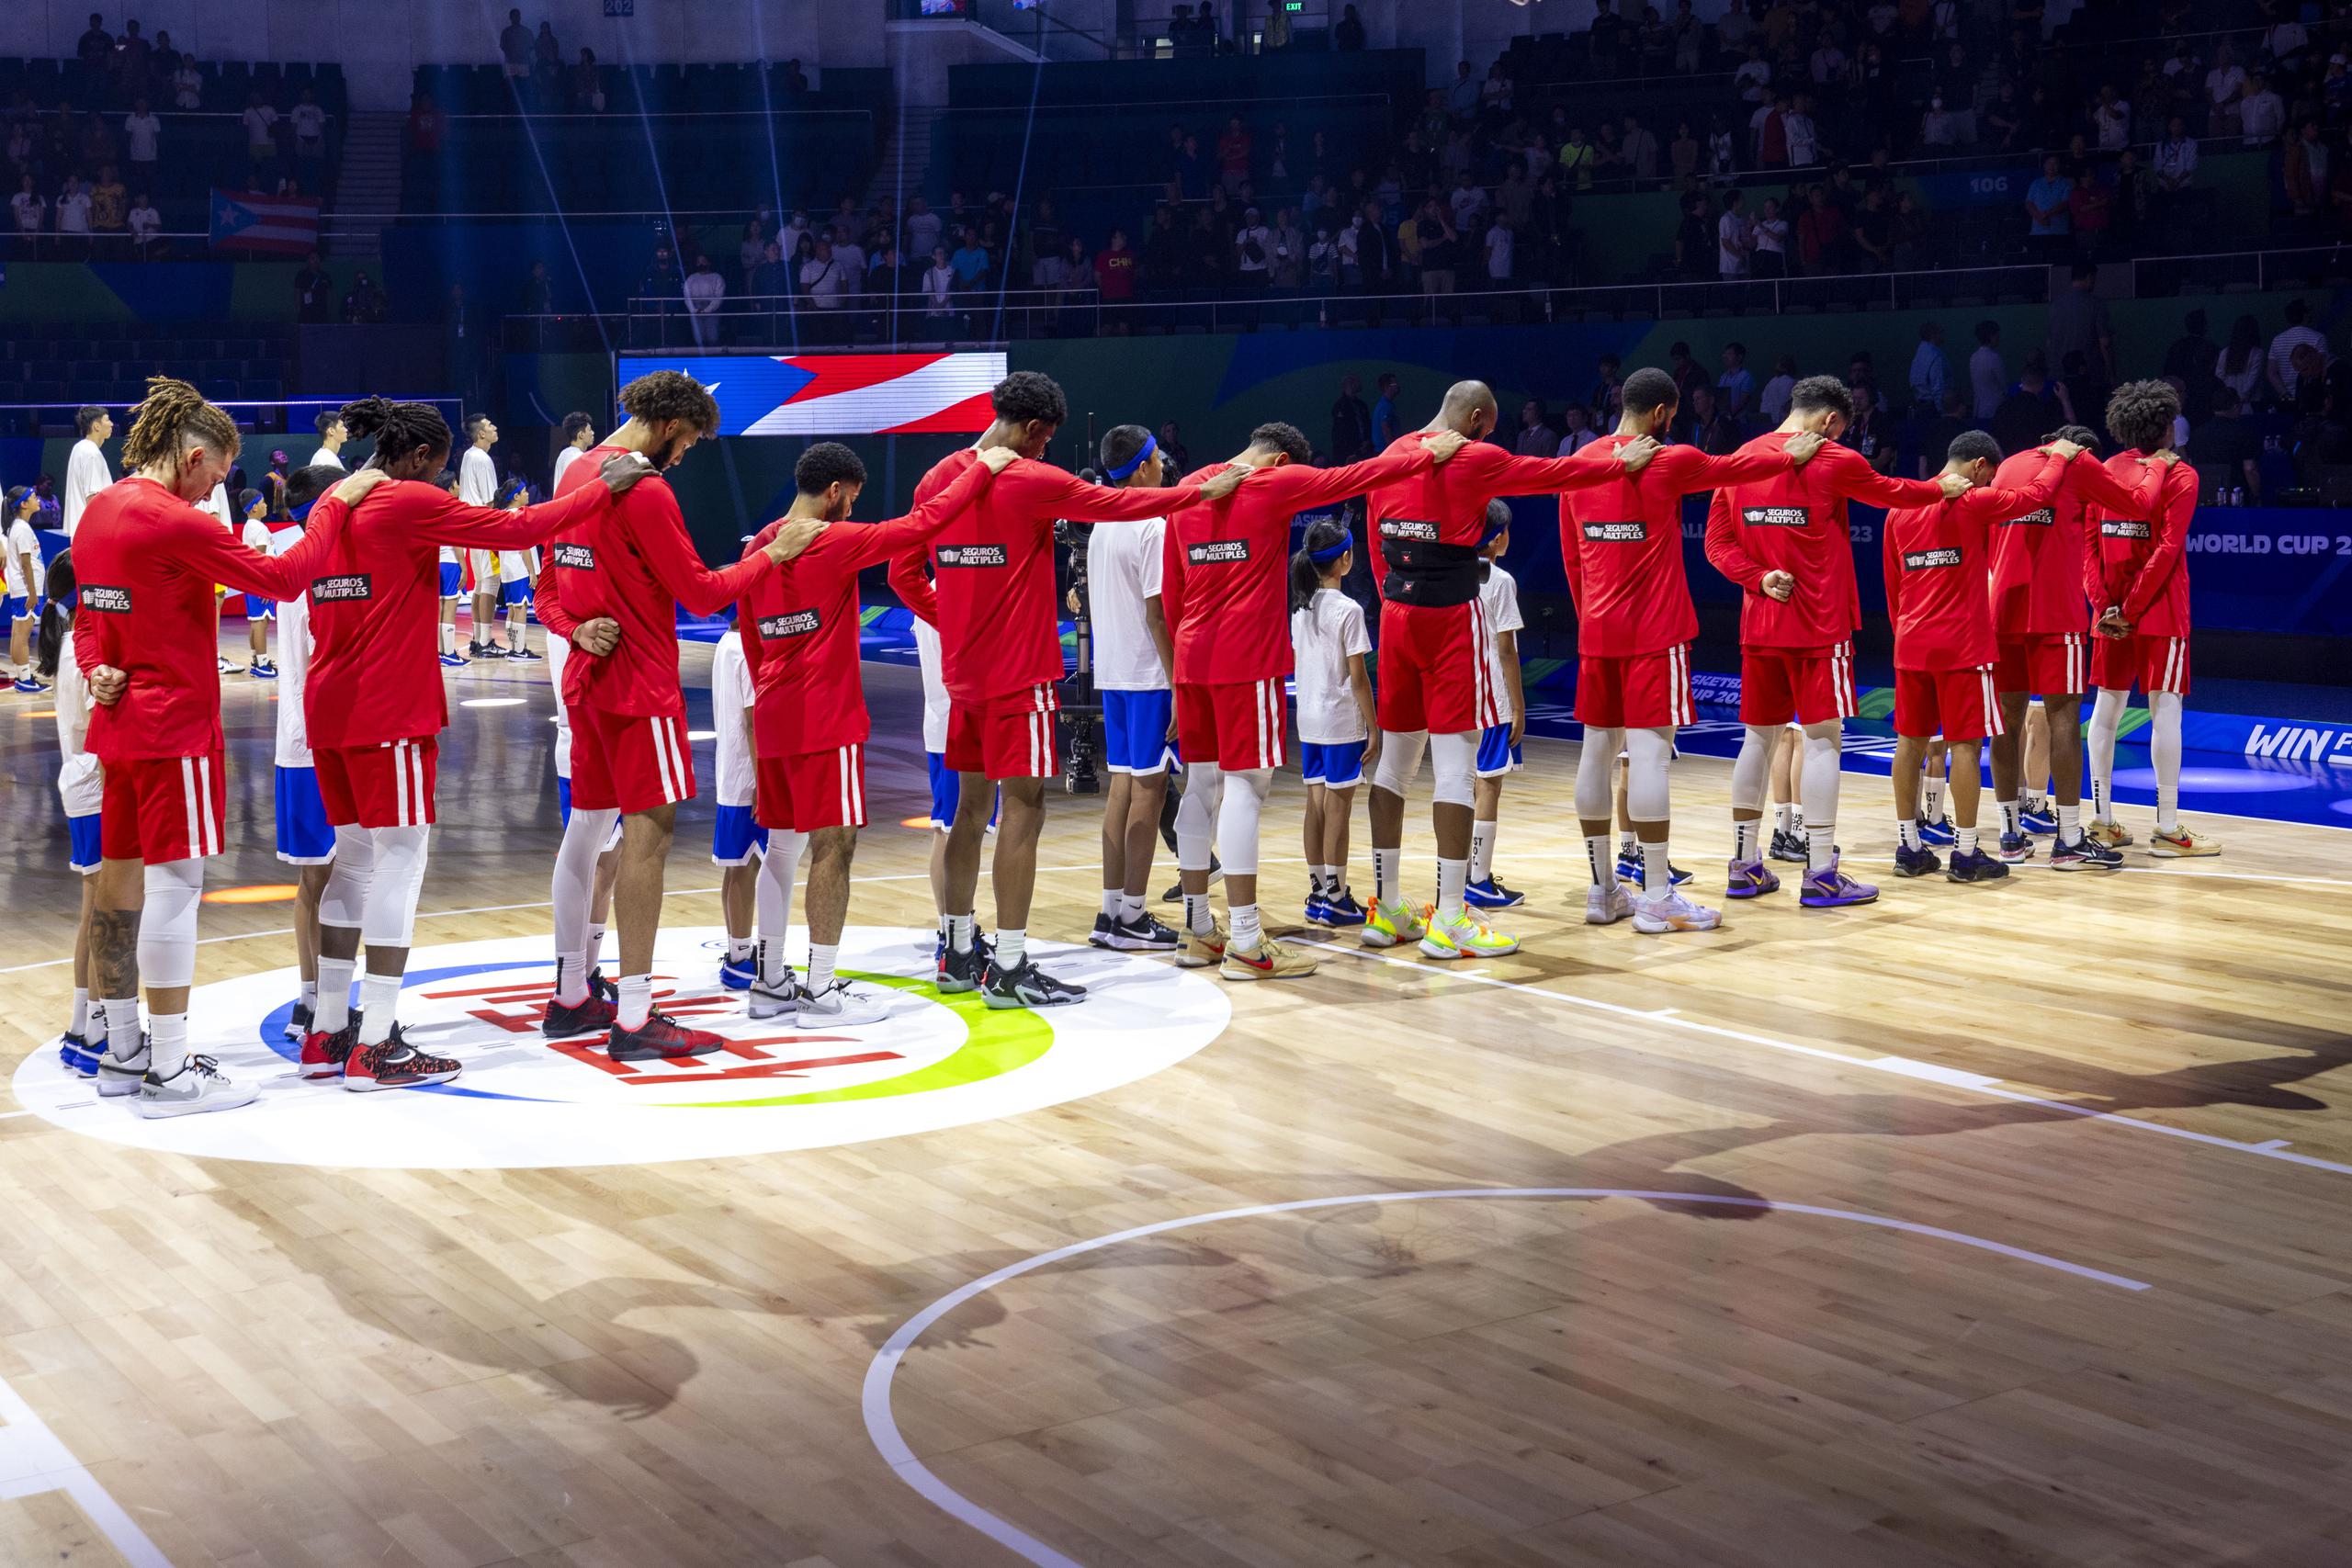 El Equipo Nacional de Baloncesto de Puerto Rico no juega en unas Olimpiadas desde su emotiva participación en los olímpicos Atenas 2004. 